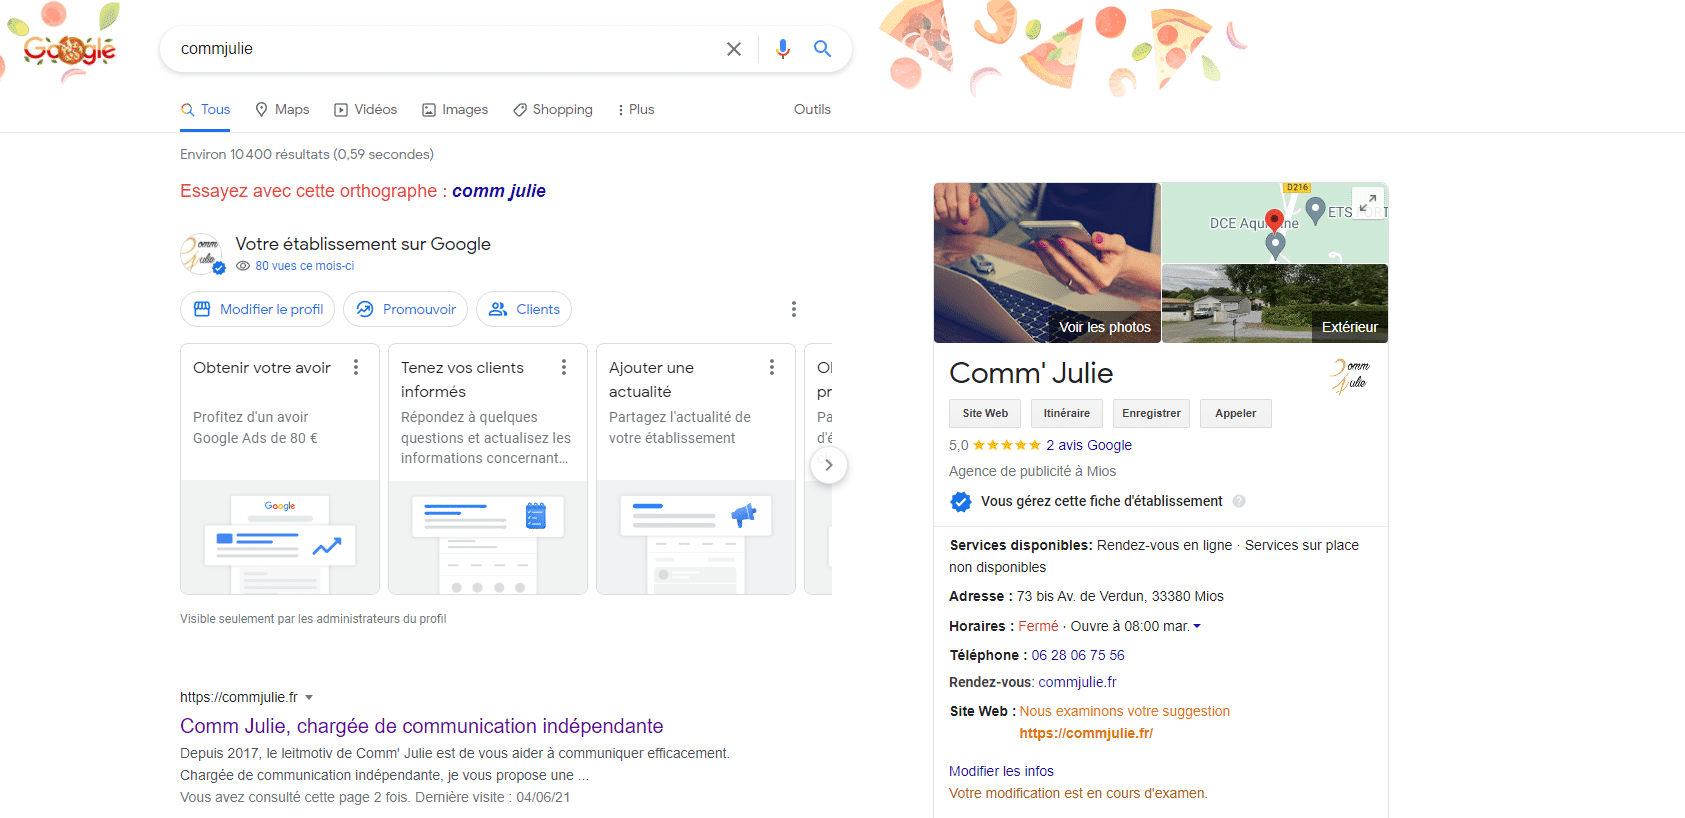 La fiche de Comm' Julie sur Google My Business.